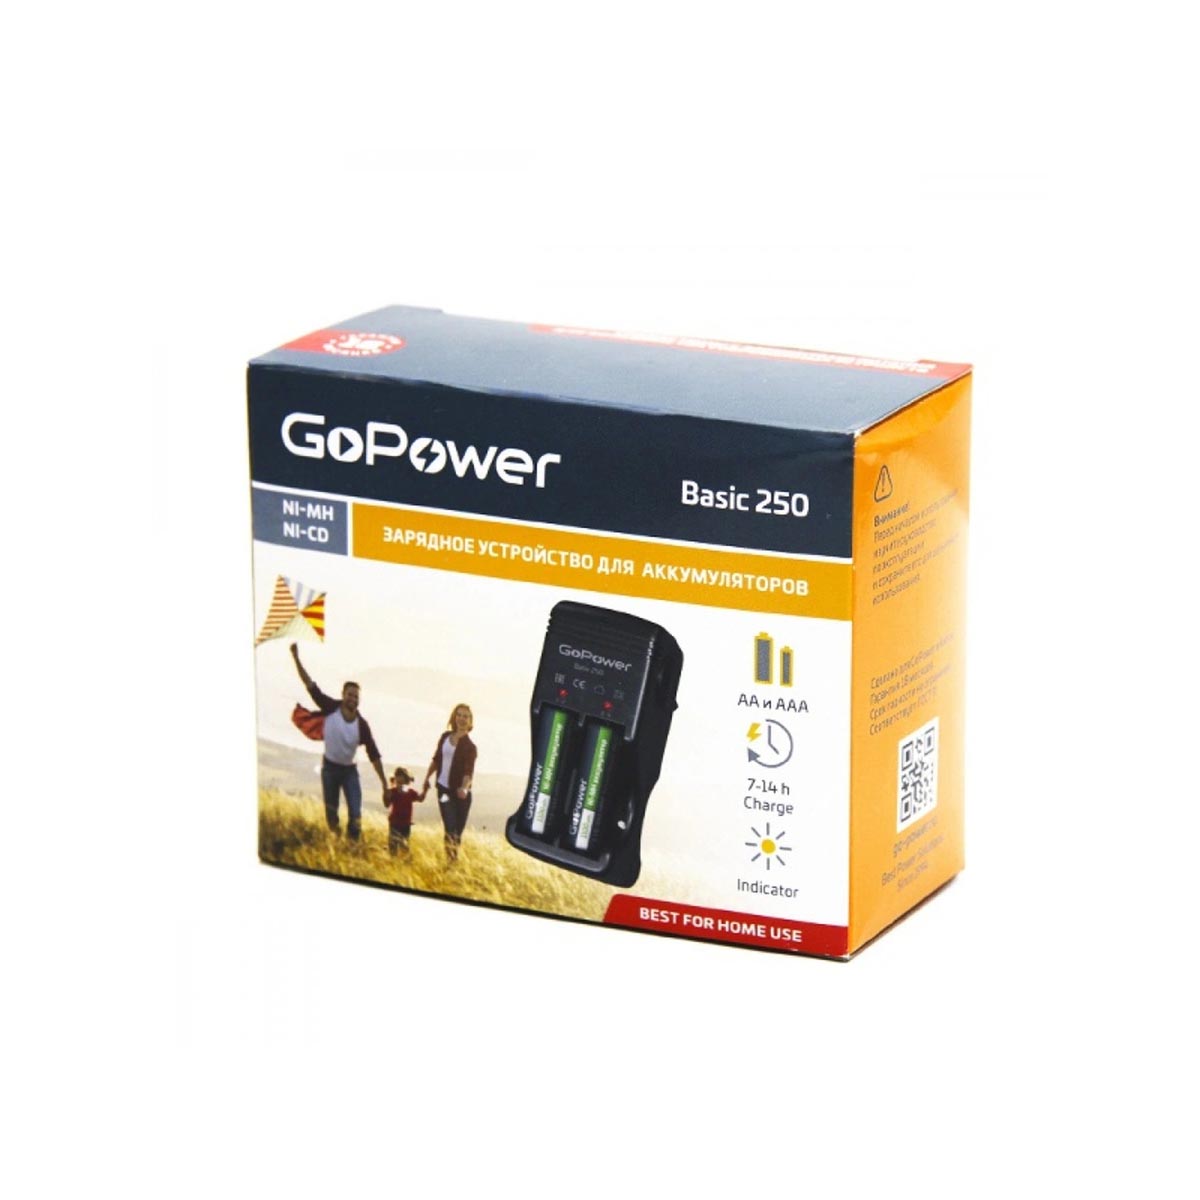 Зарядное устройство для аккумуляторов GoPower Basic 250 Ni-MH/Ni-Cd, 4 слота, цвет черный